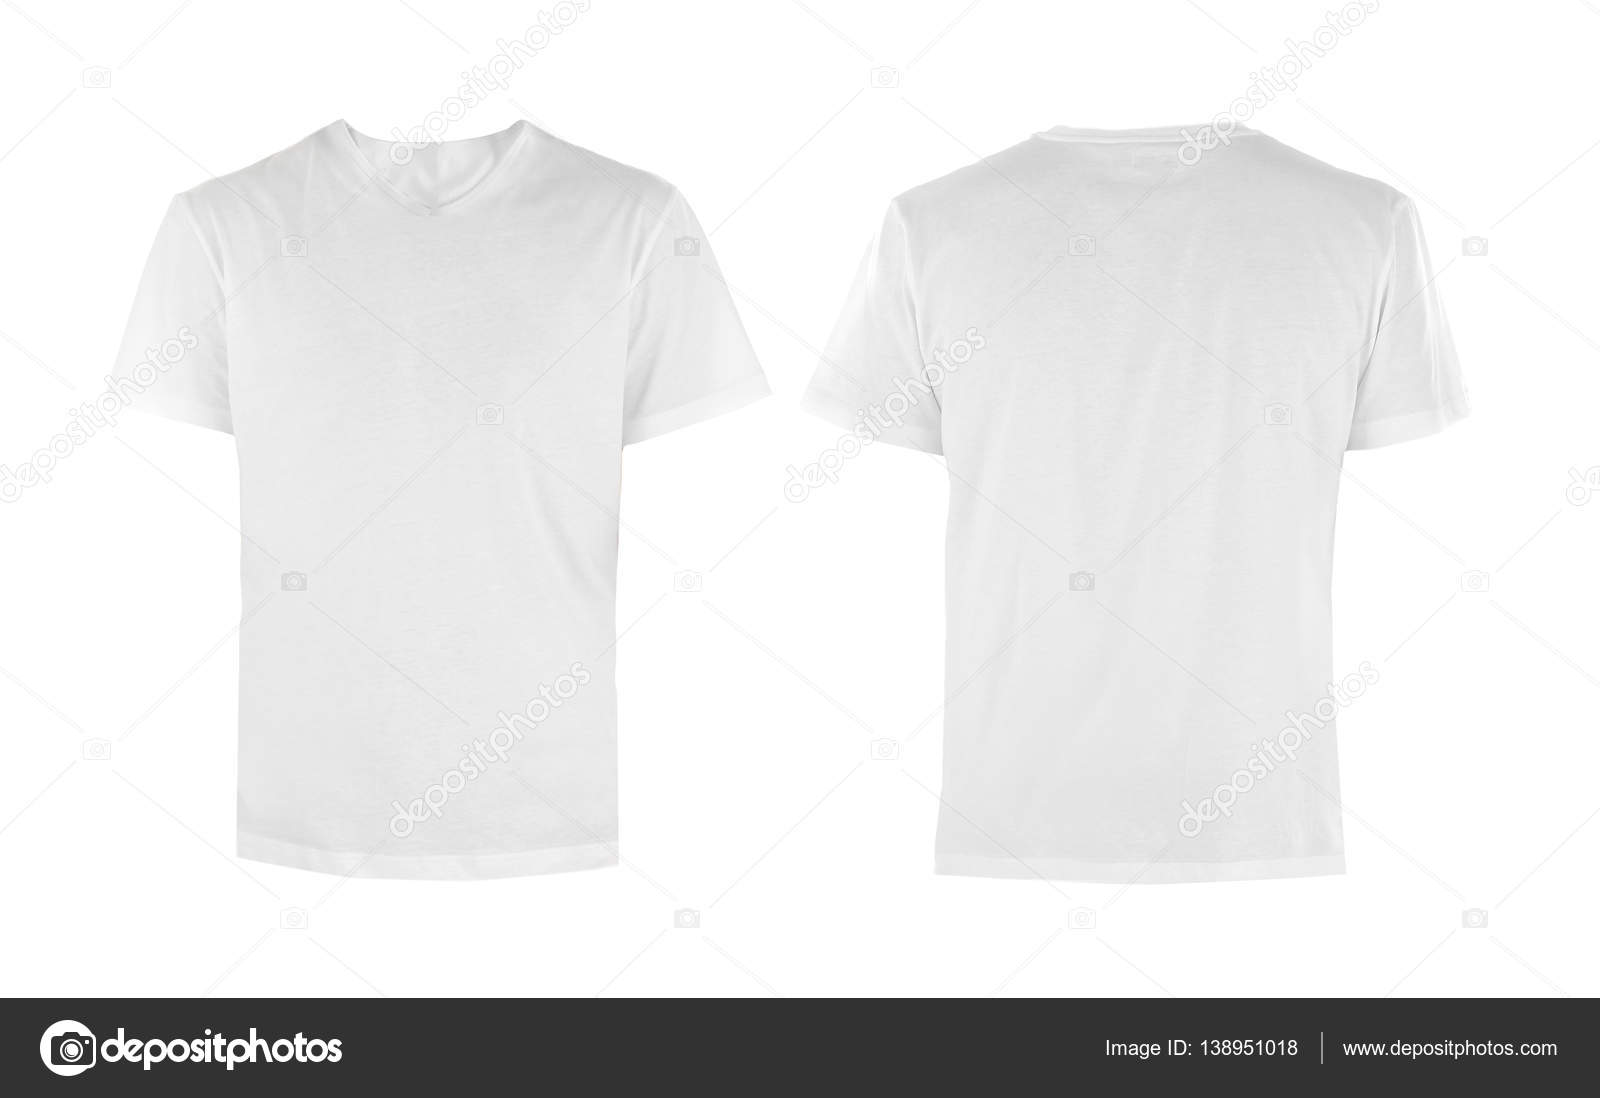 Vista frontal y trasera de la camiseta: fotografía de stock © belchonock  #138951006